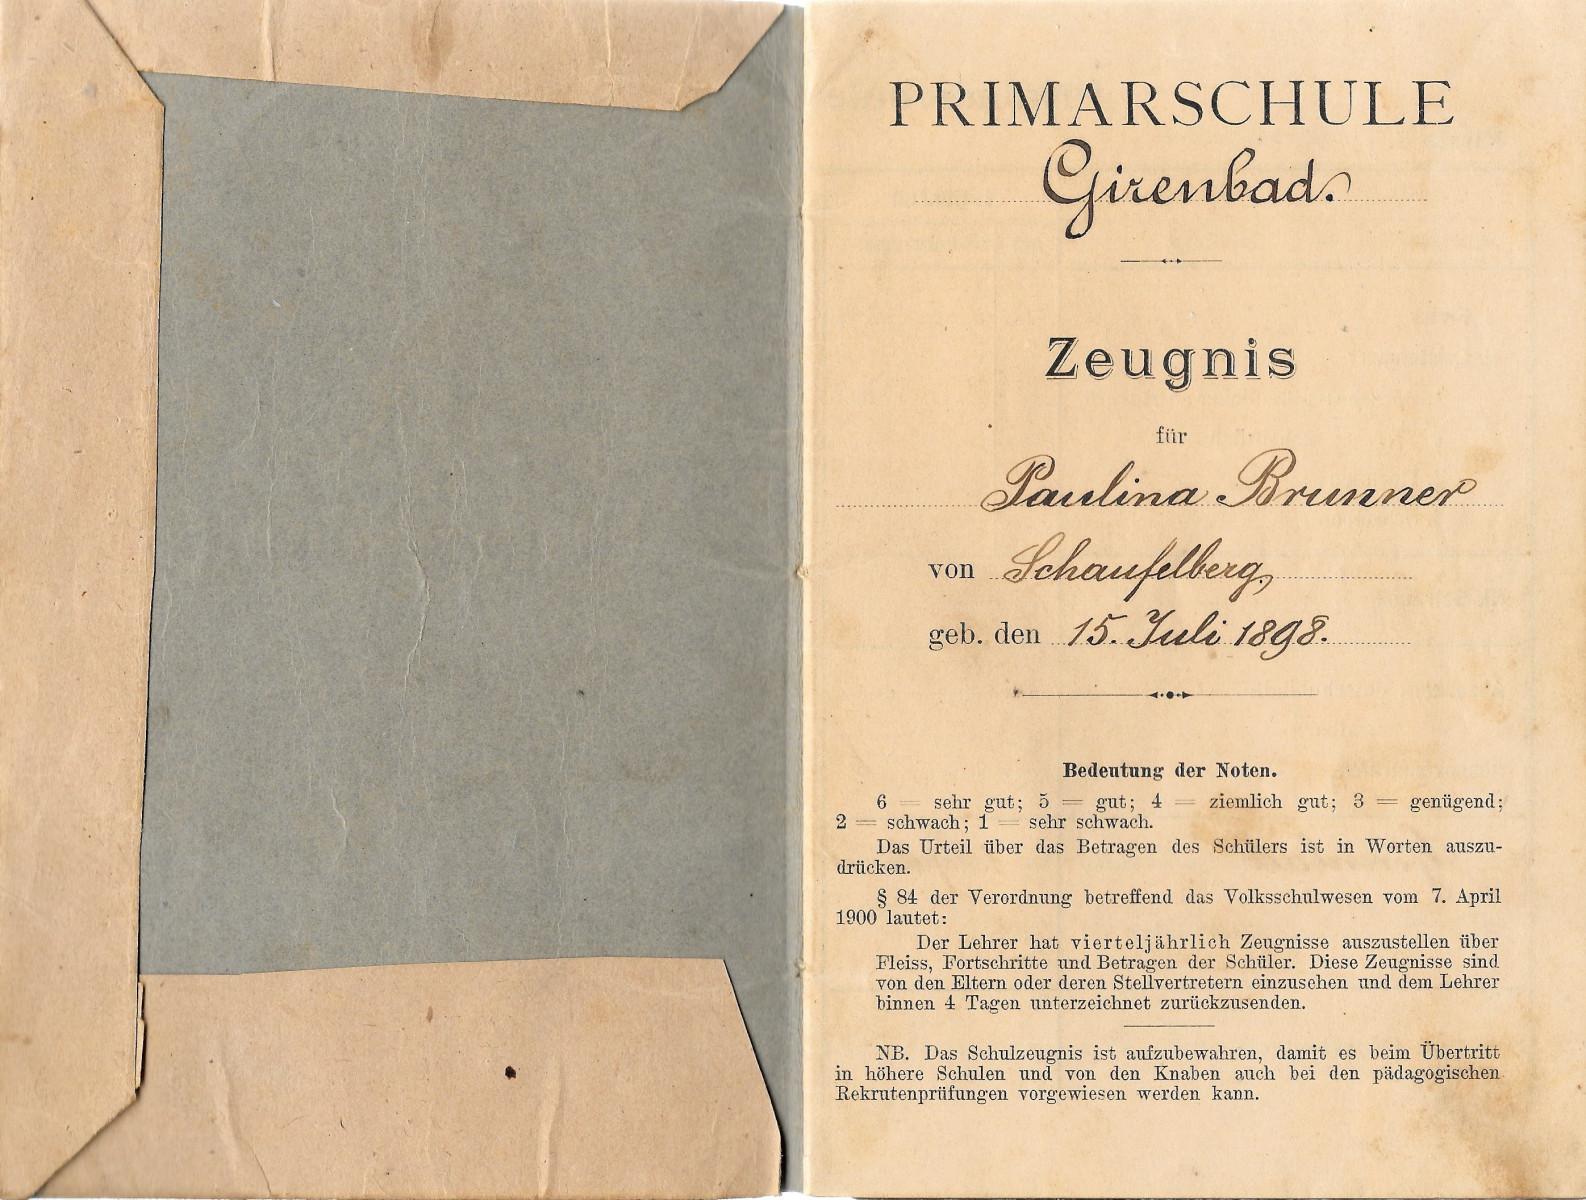 Schulzeugnis von Paulina Brunner, geb. 15. Juli 1898 (Personalien)